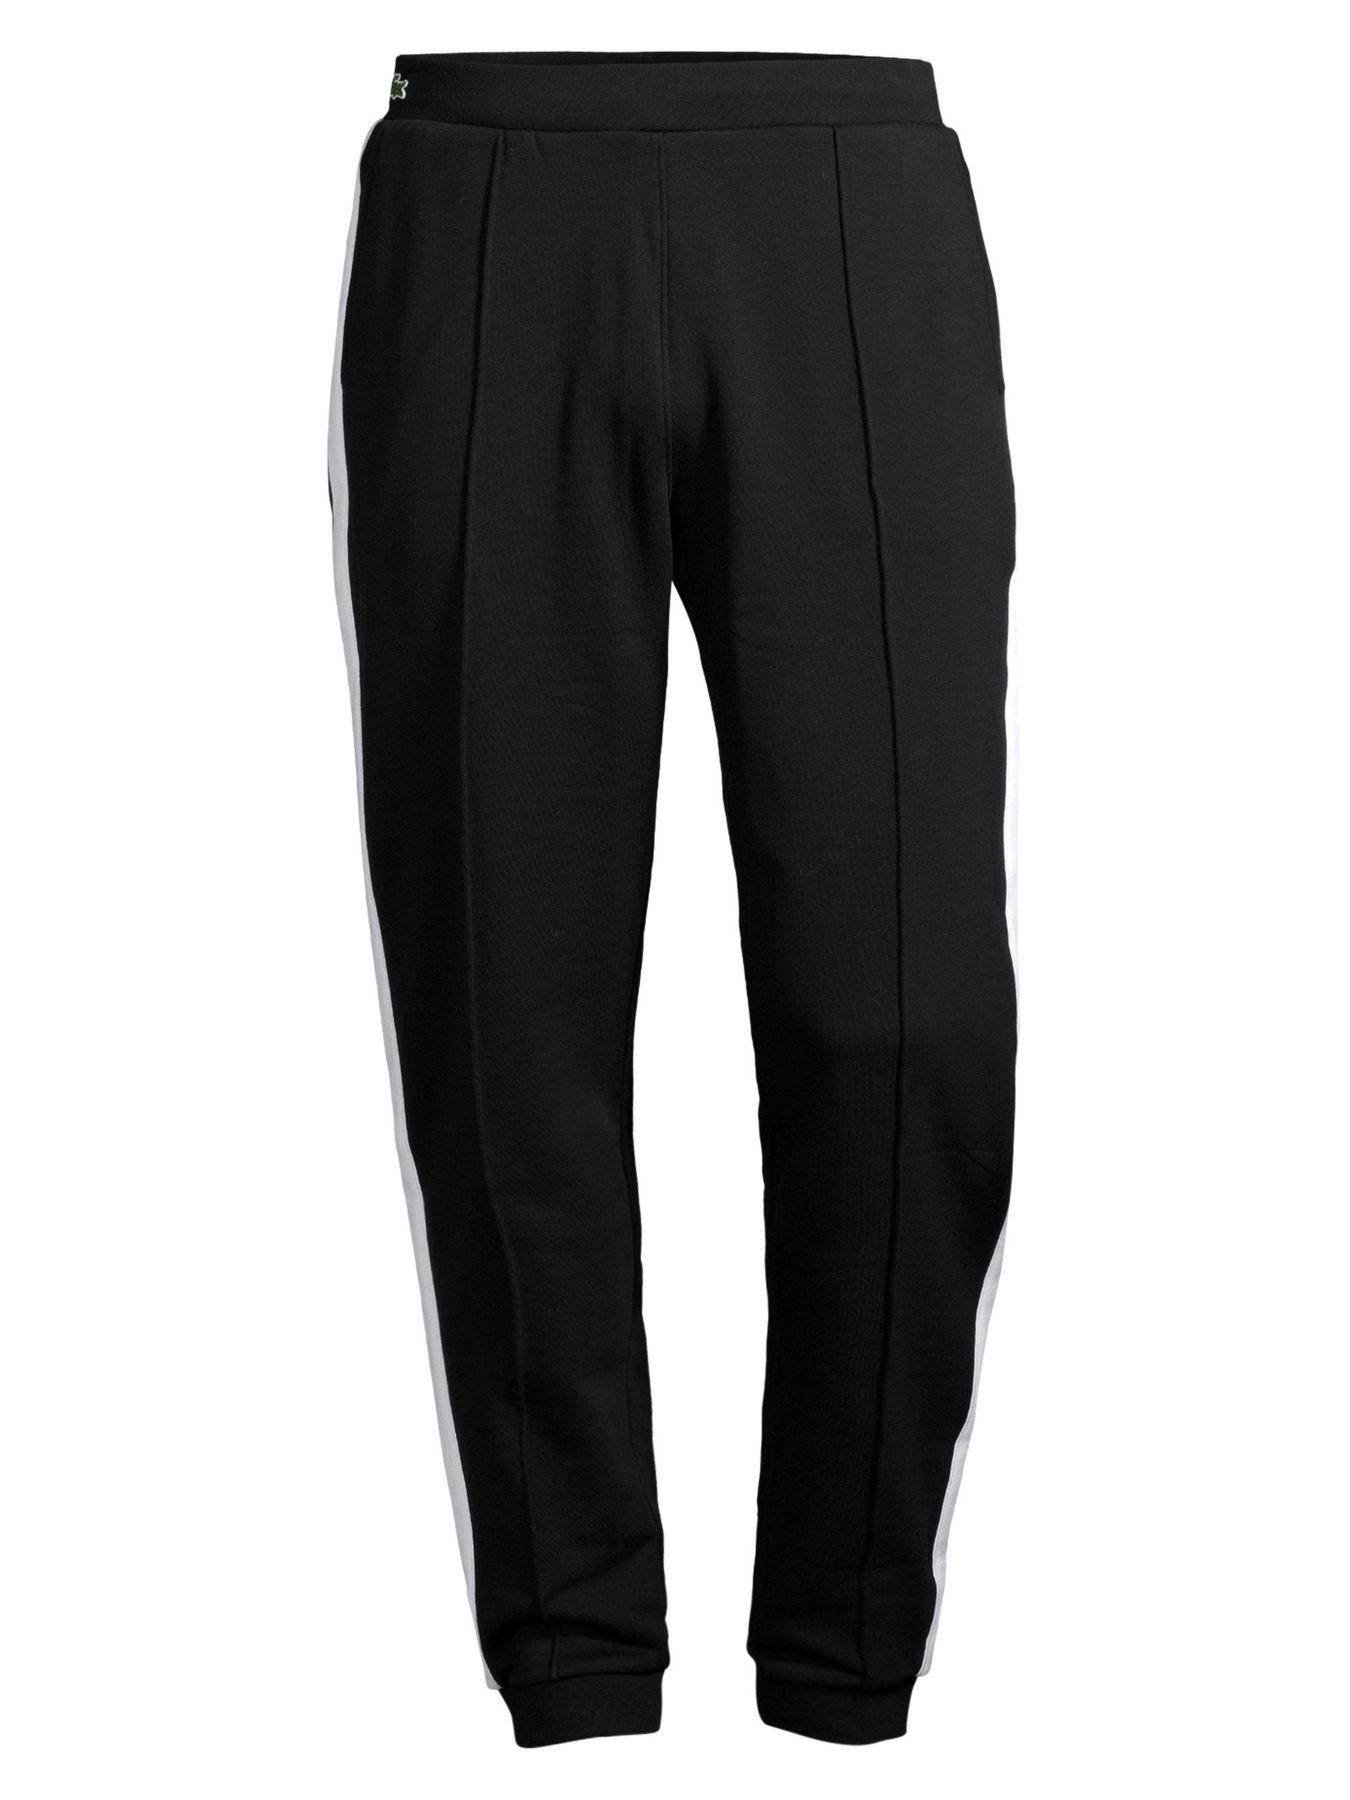 Lacoste Fleece Stripe Track Pants in Black for Men - Lyst